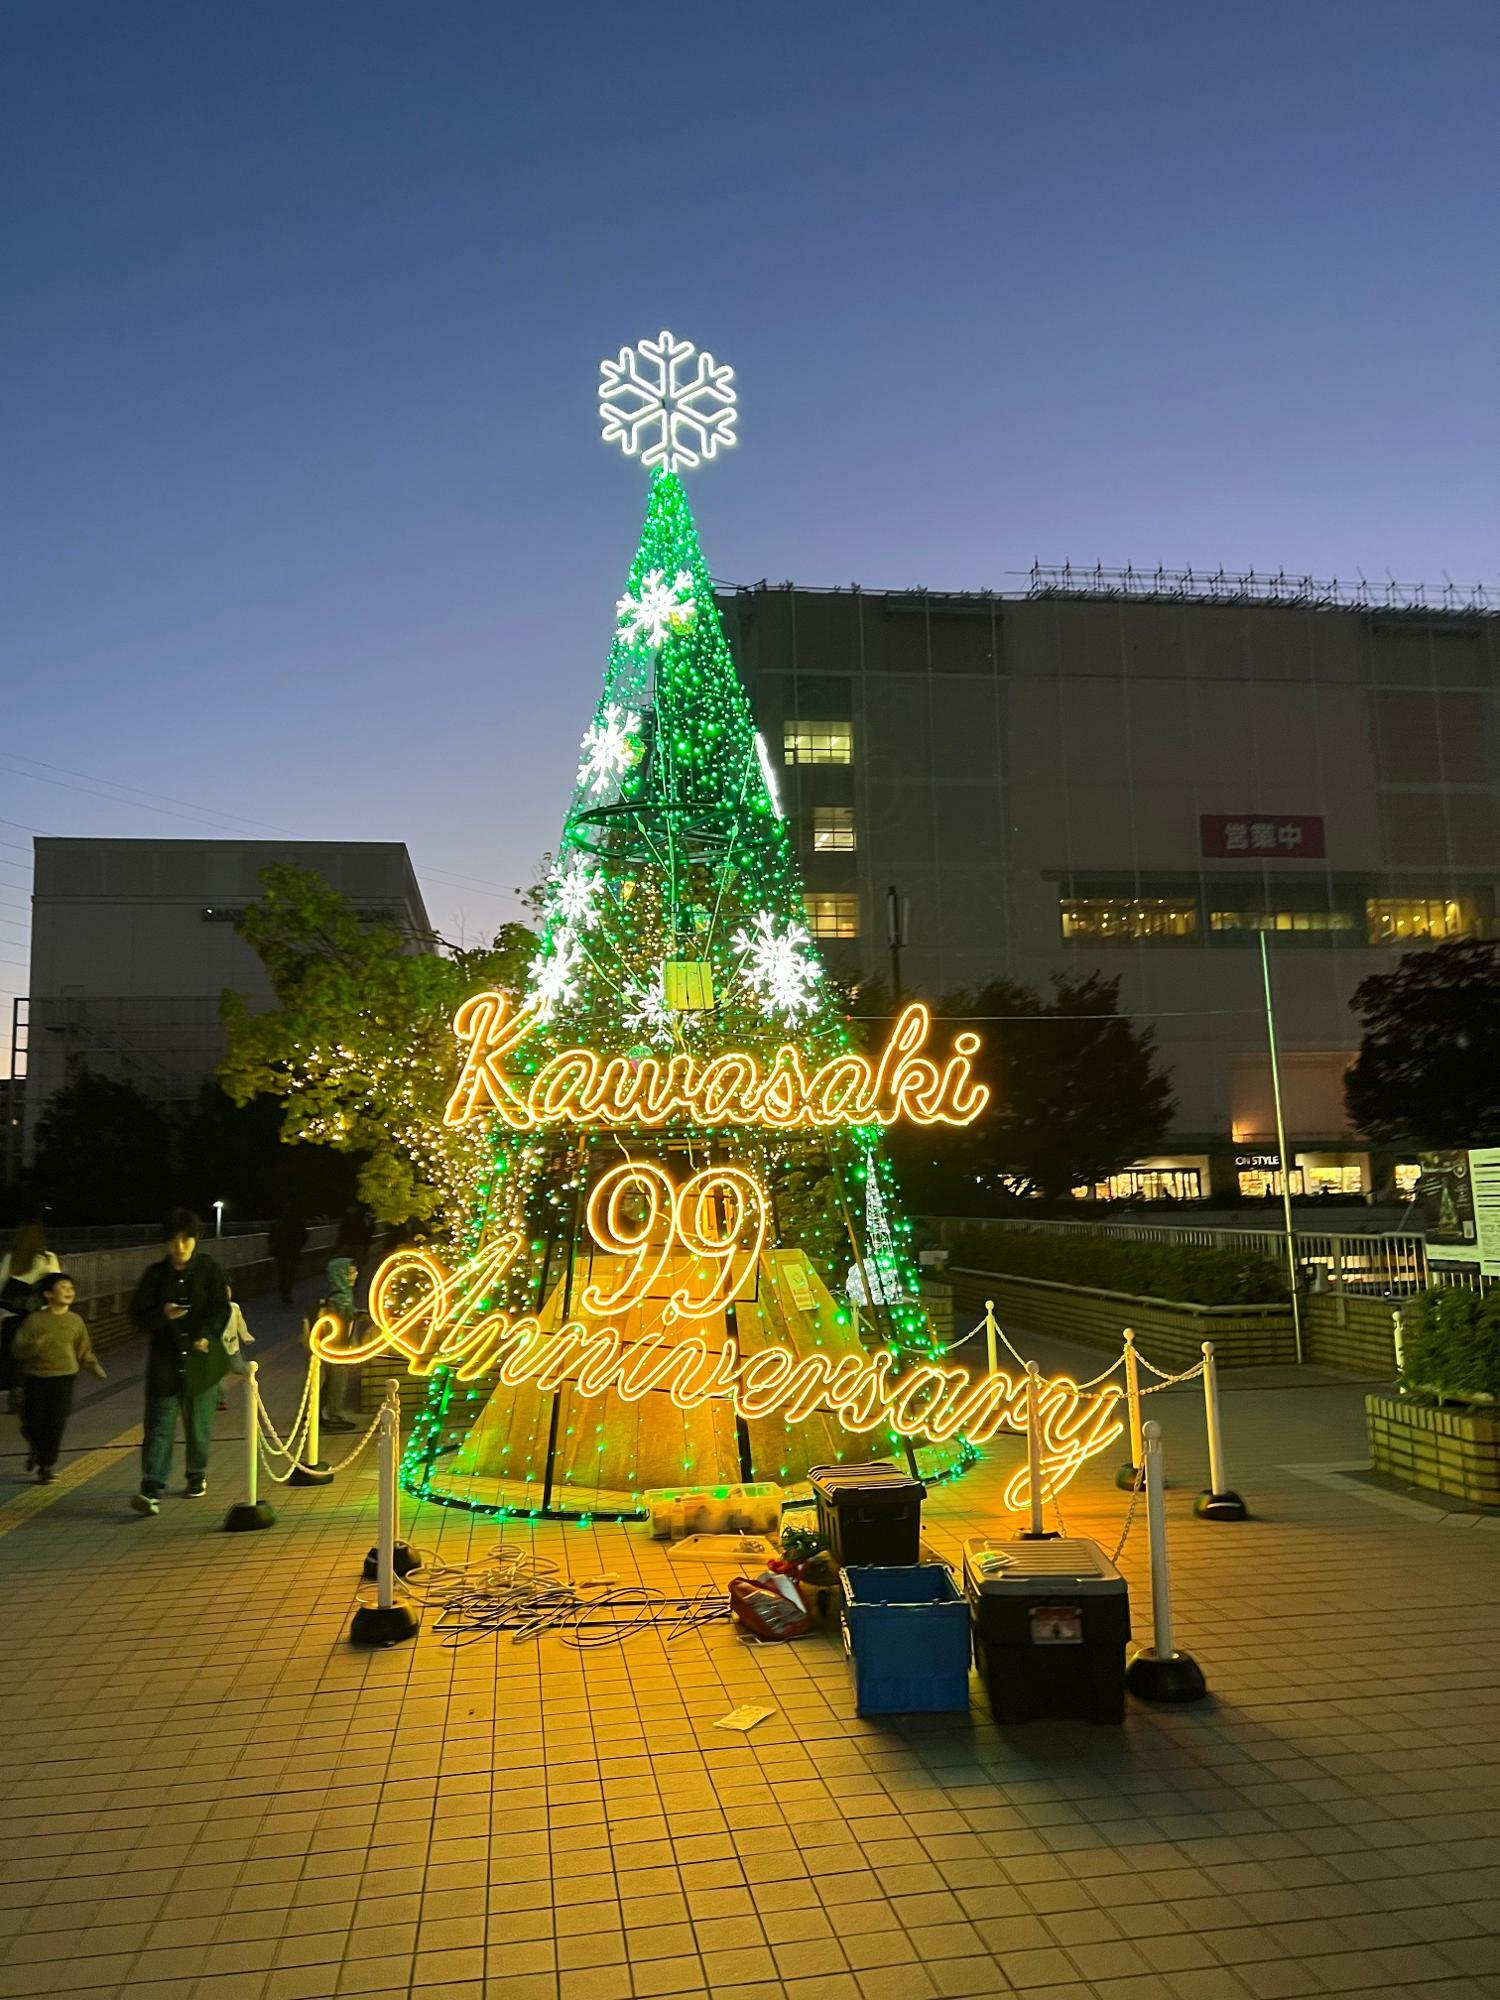 今年のツリーのテーマは「KAWASAKI 99」。市制100周年に向けて“99”の文字が輝きます（本番では“99th ”となるそうです）。